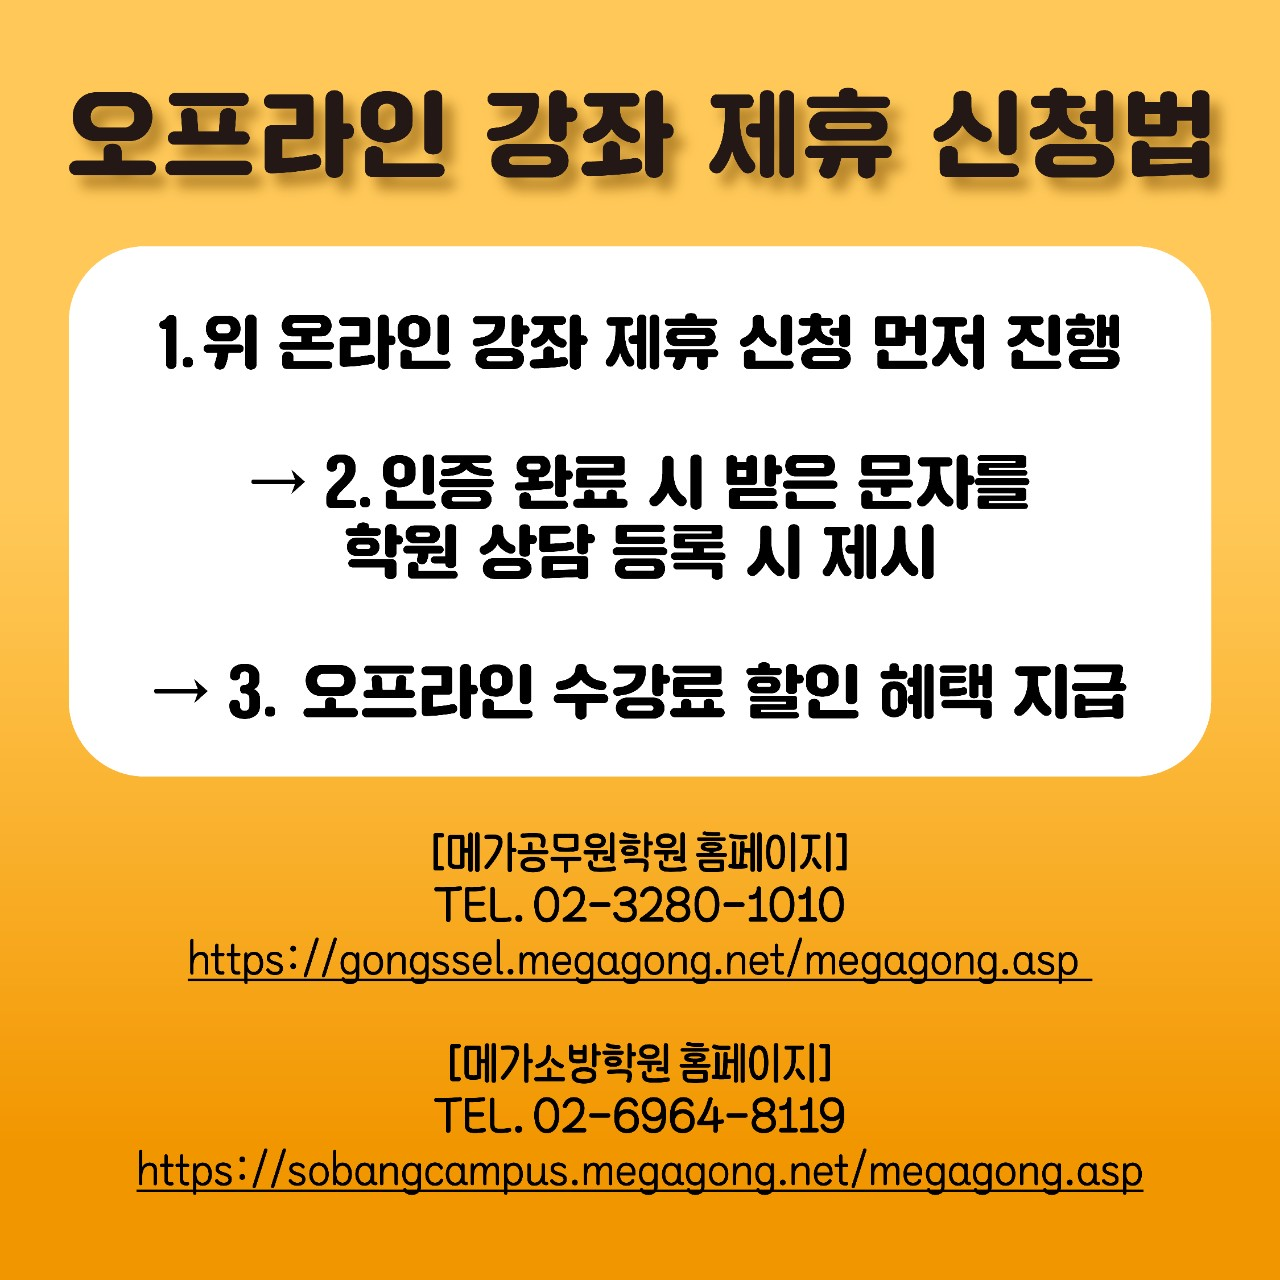 2022년 제휴 안내] : 한국외국어대학교 서울캠퍼스 총학생회